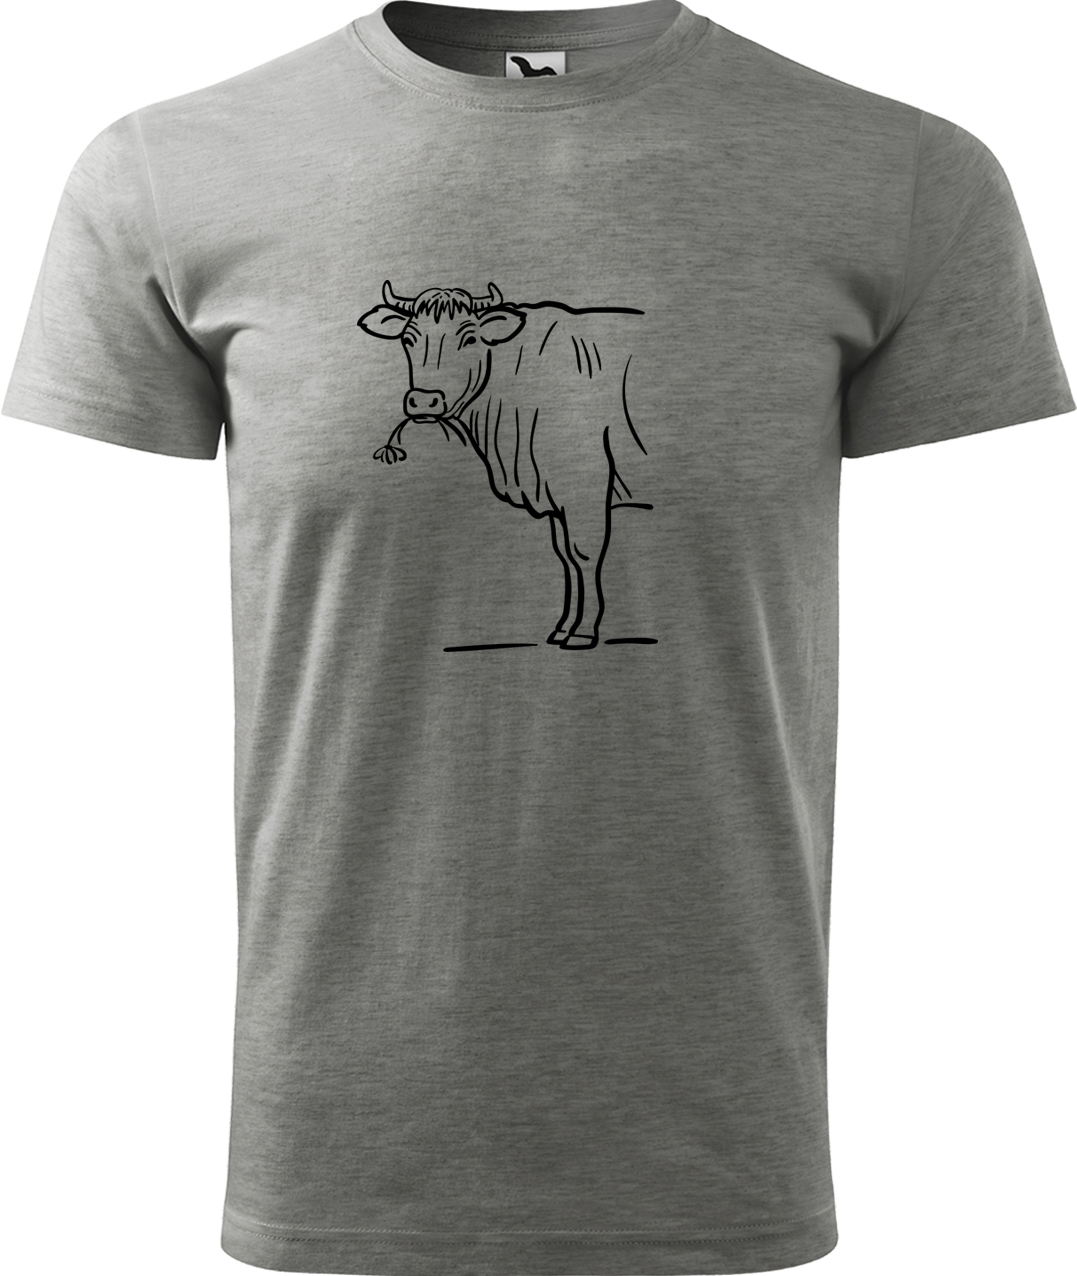 Pánské tričko s krávou - Býk Velikost: L, Barva: Tmavě šedý melír (12), Střih: pánský